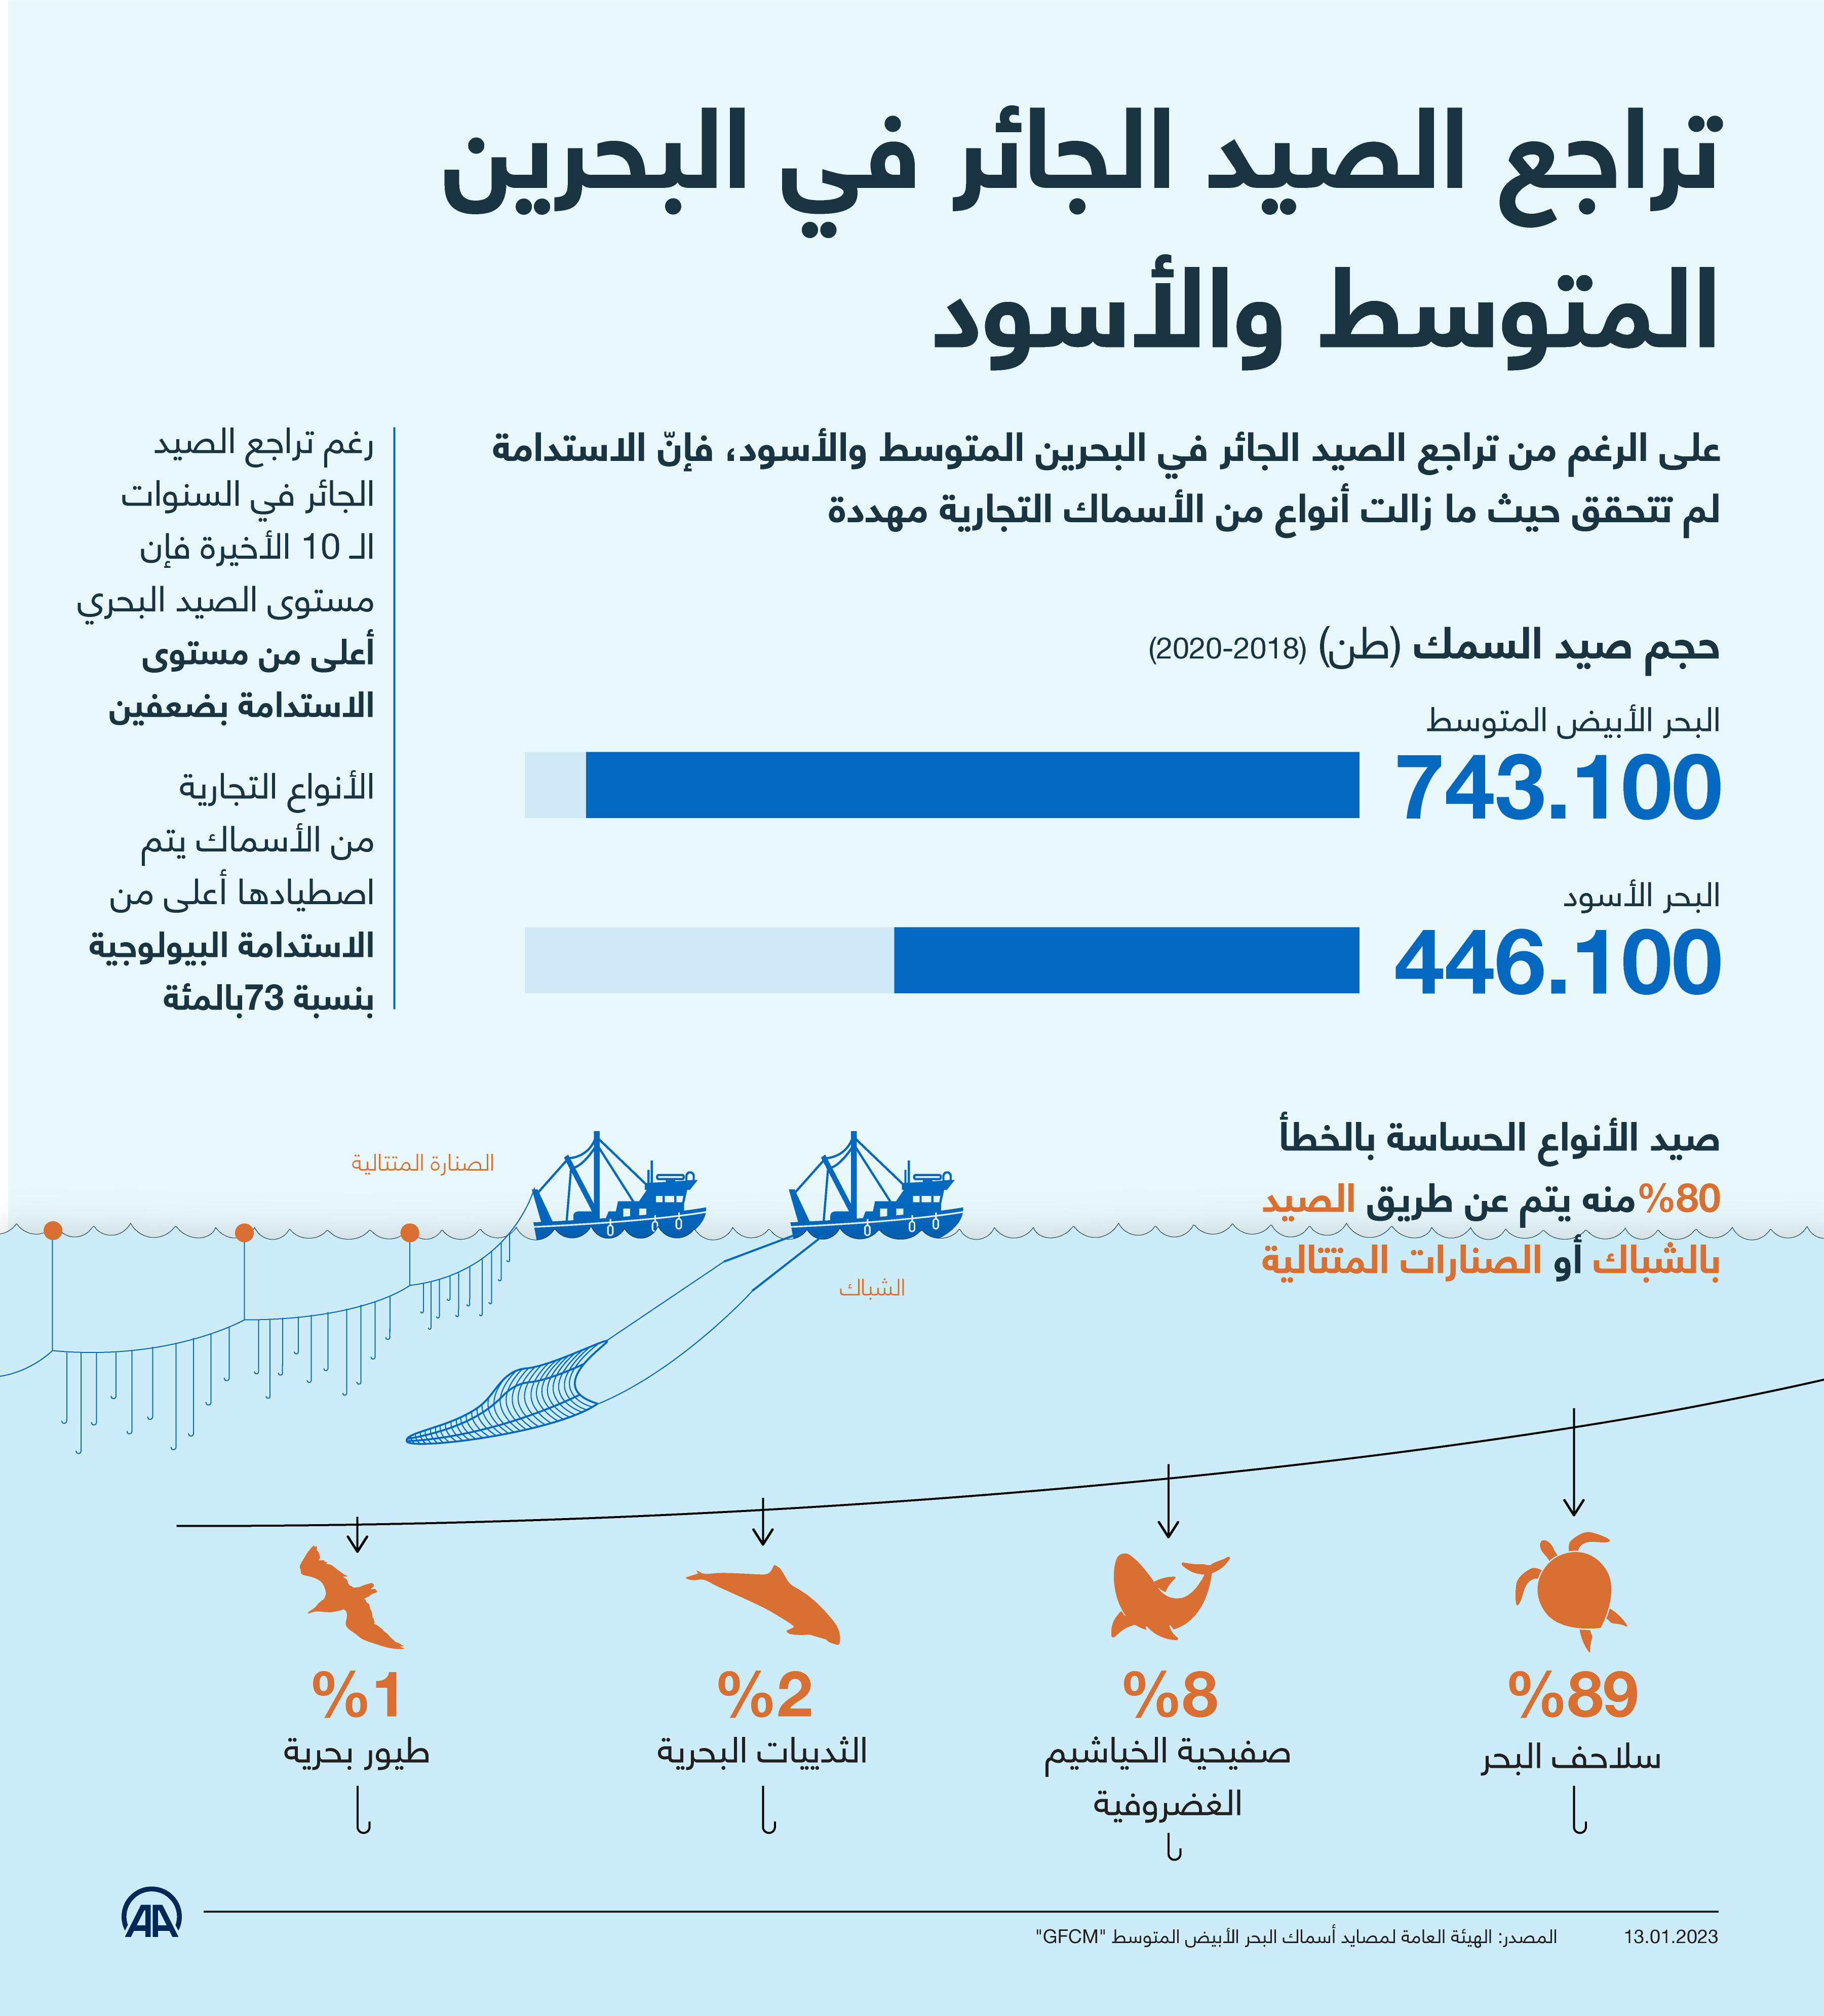 تراجع الصيد الجائر في البحرين المتوسط والأسود